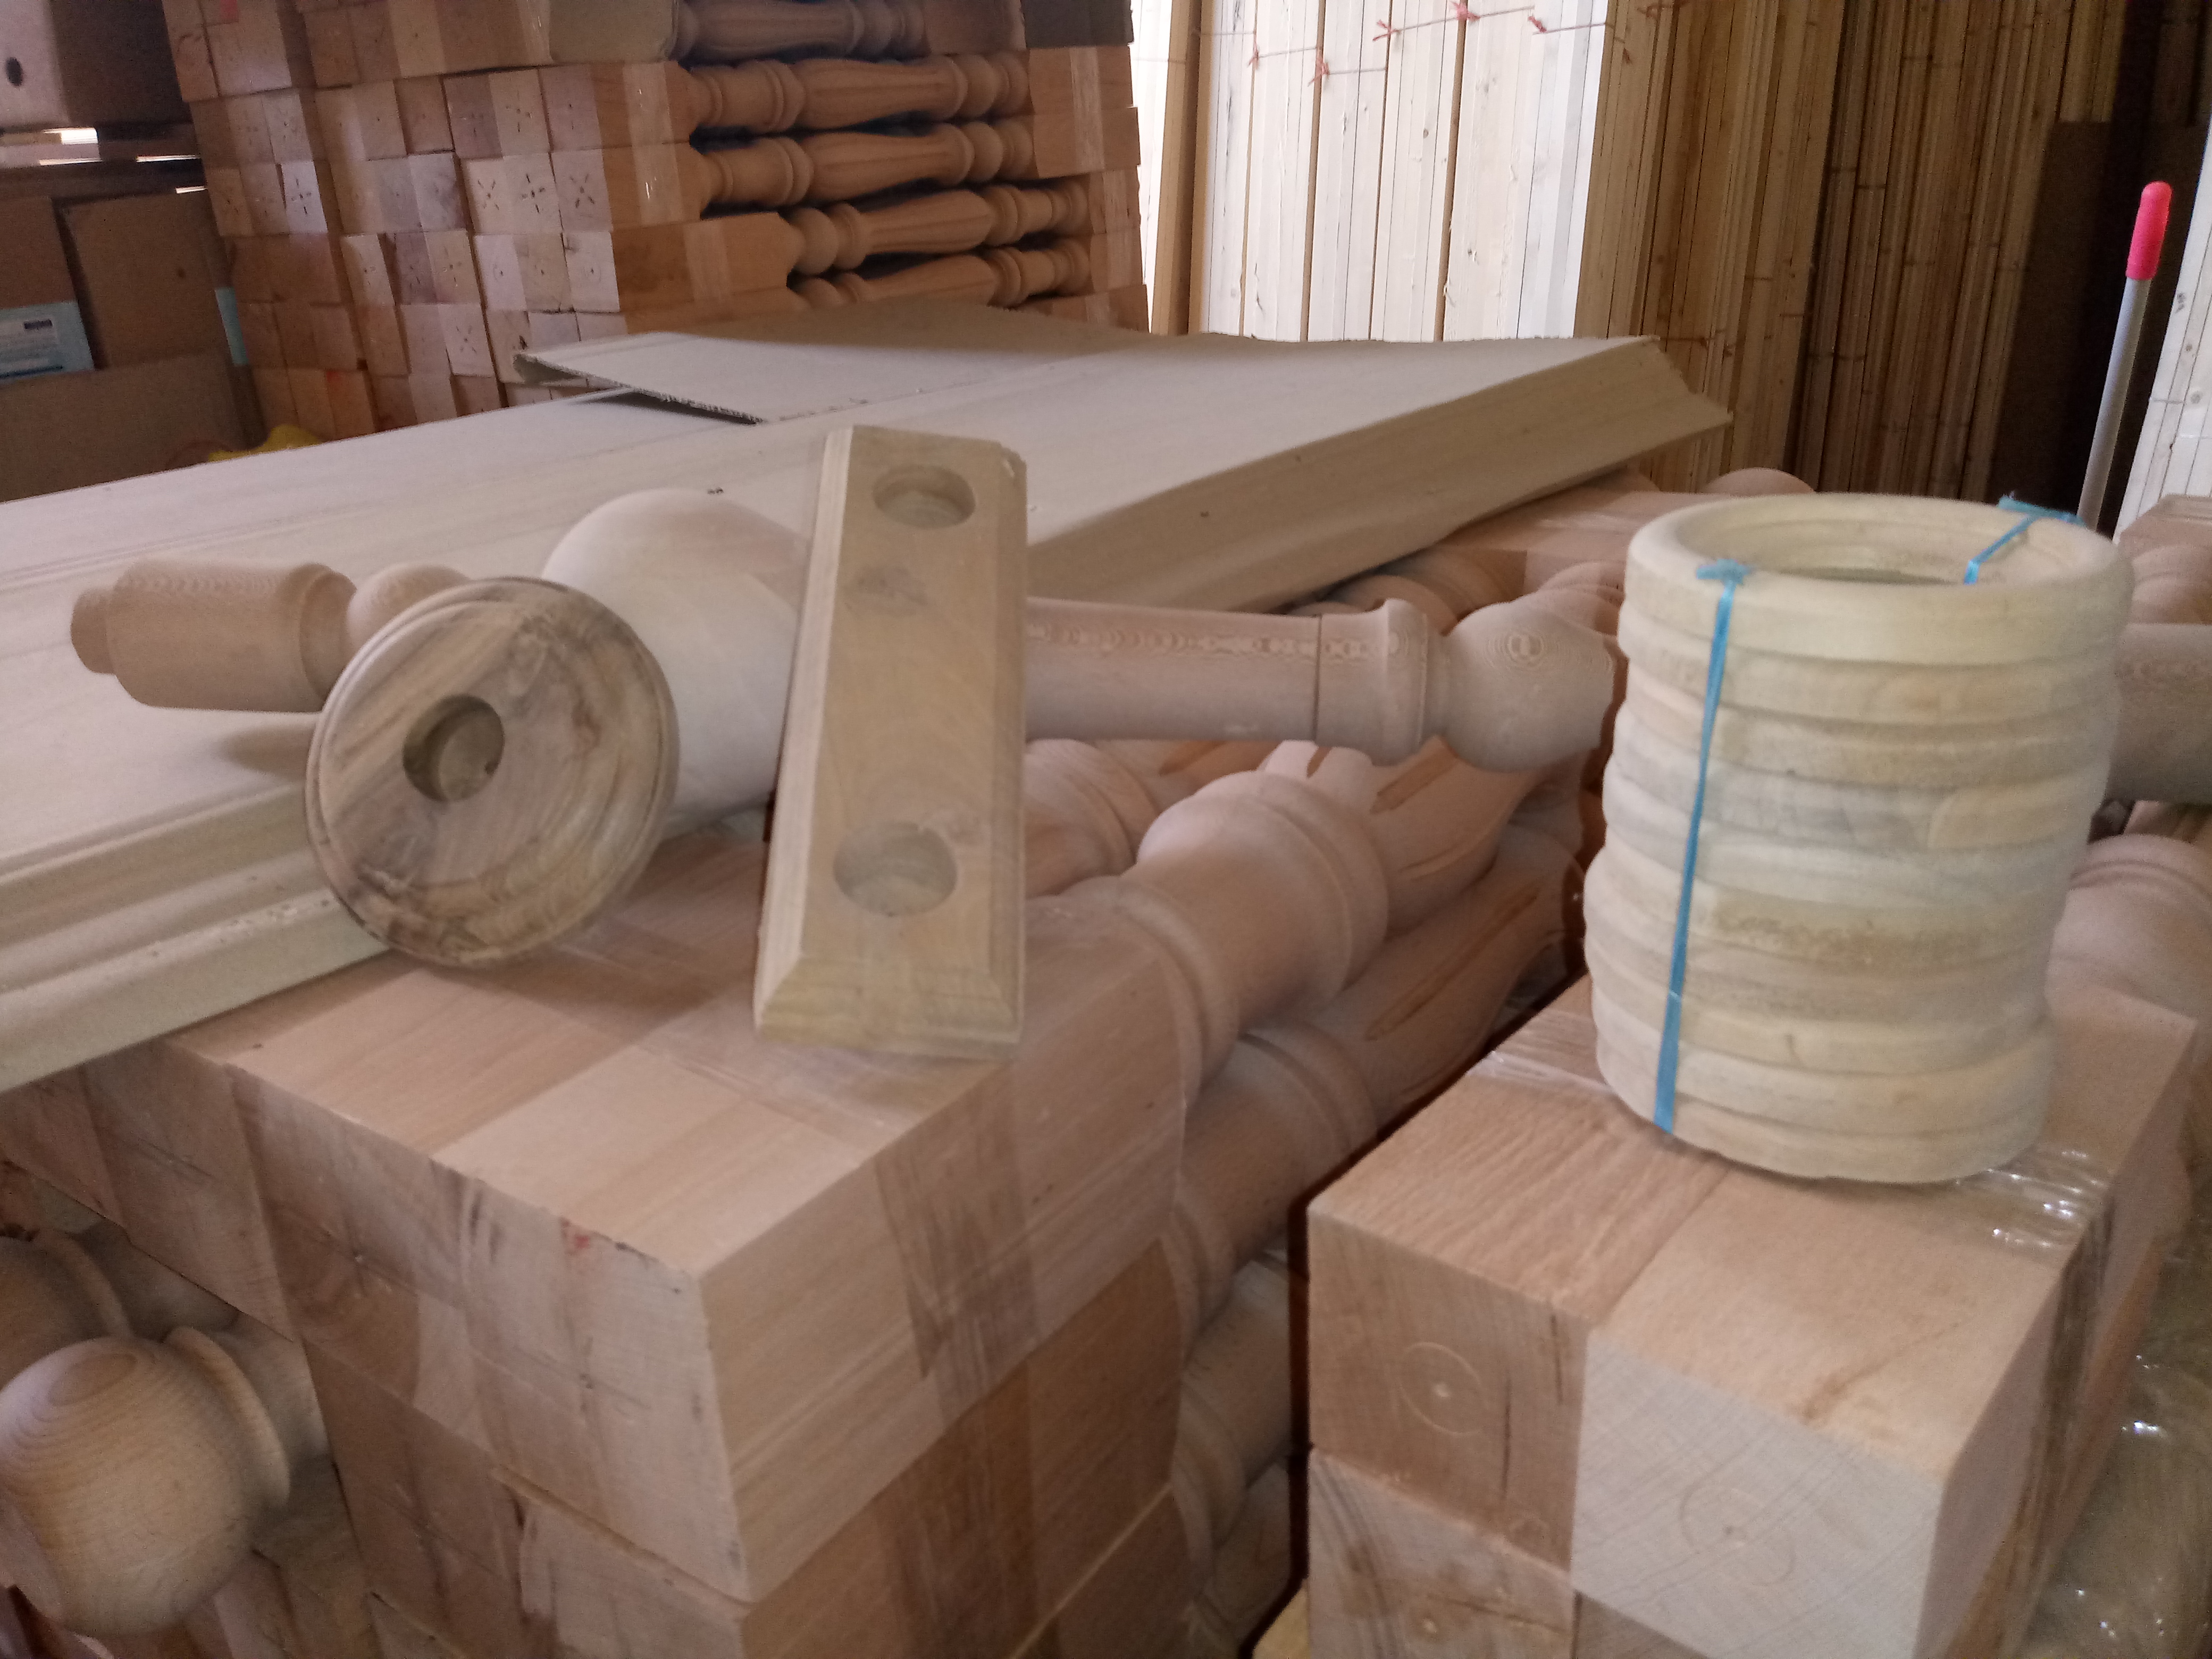 دکوراسیون چوبی , انواع چوب زیرسازی , چوب پله , نرده و هندریل , لمبه و چوب روسی و راش